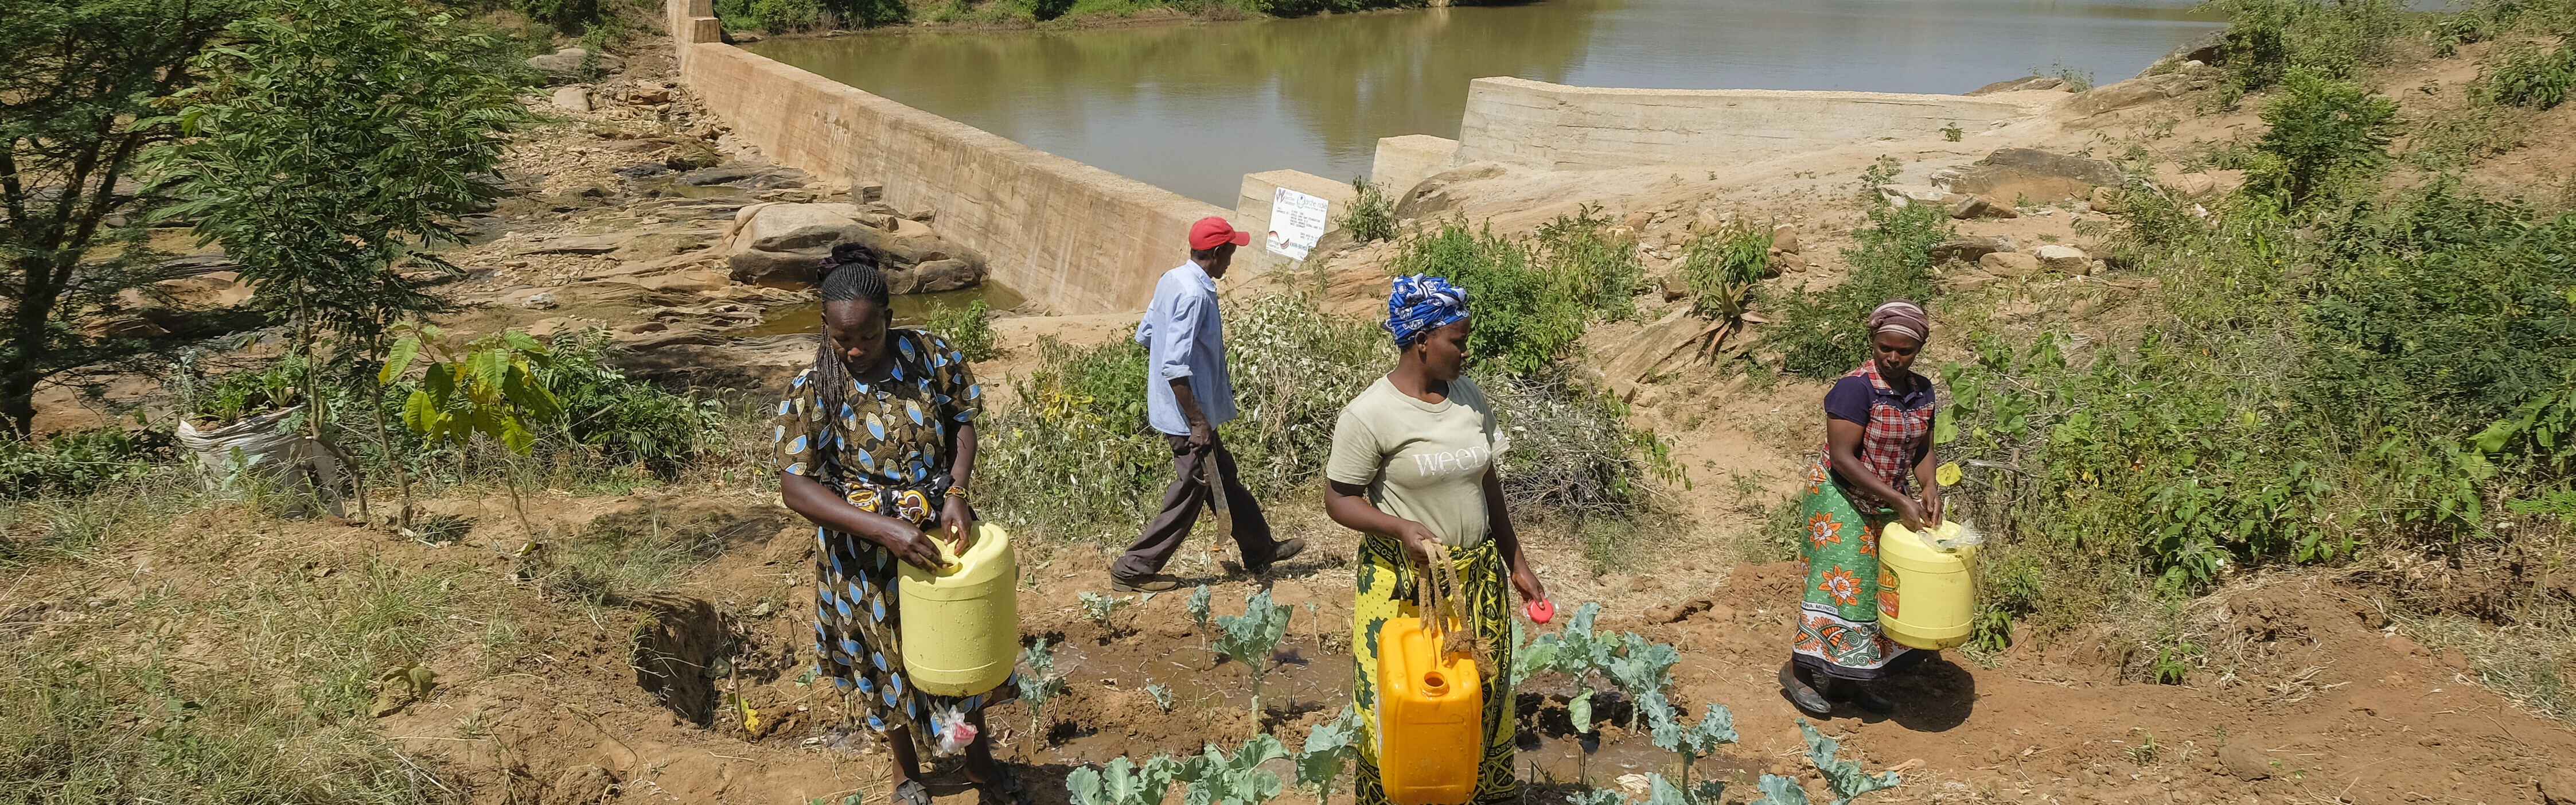 Hilfsprojekt in Kenia: Bau eines Damms verbessert Wasserversorgung der Menschen